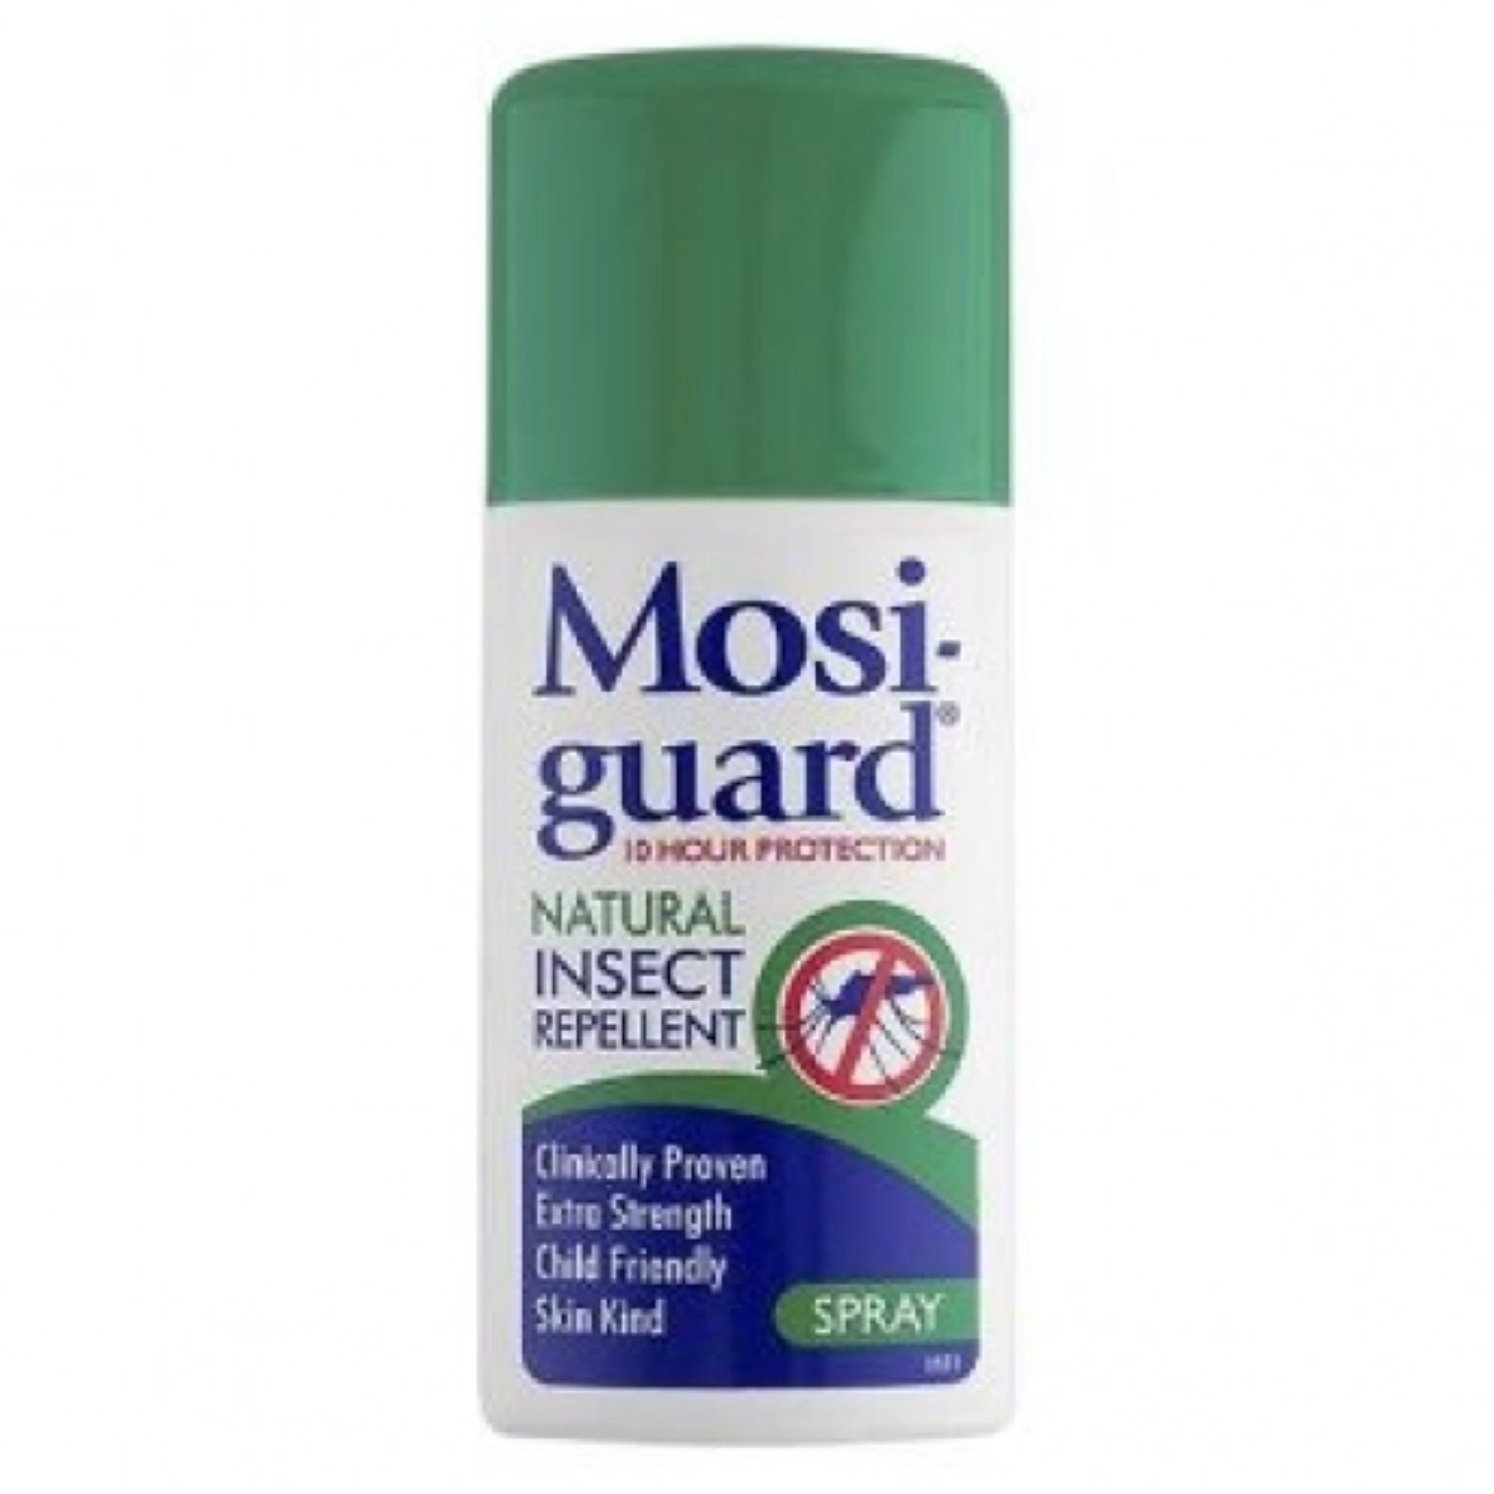 Mosi guard natural